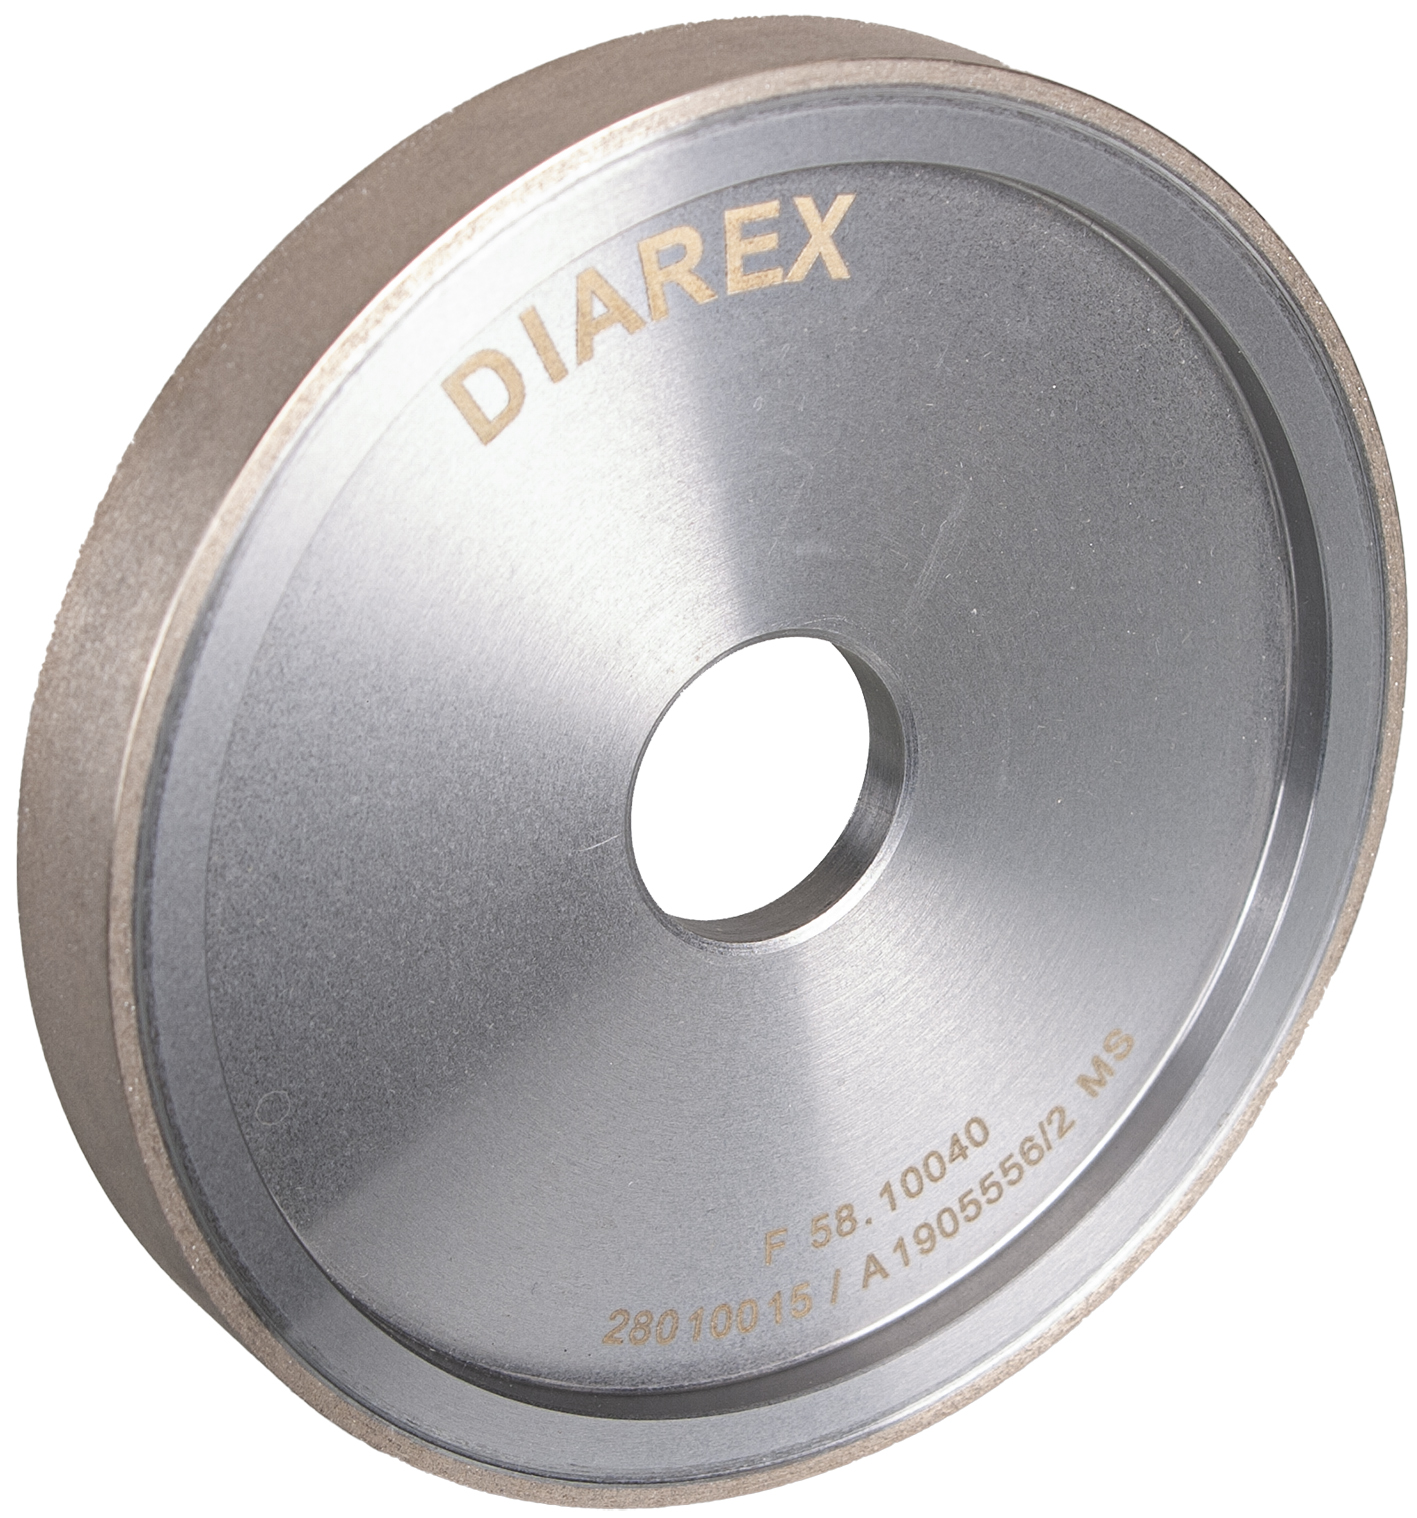 DIAREX Werkzeugschleifscheibe ø 150 mm | Bohrung 32 mm | Breite 20 mm